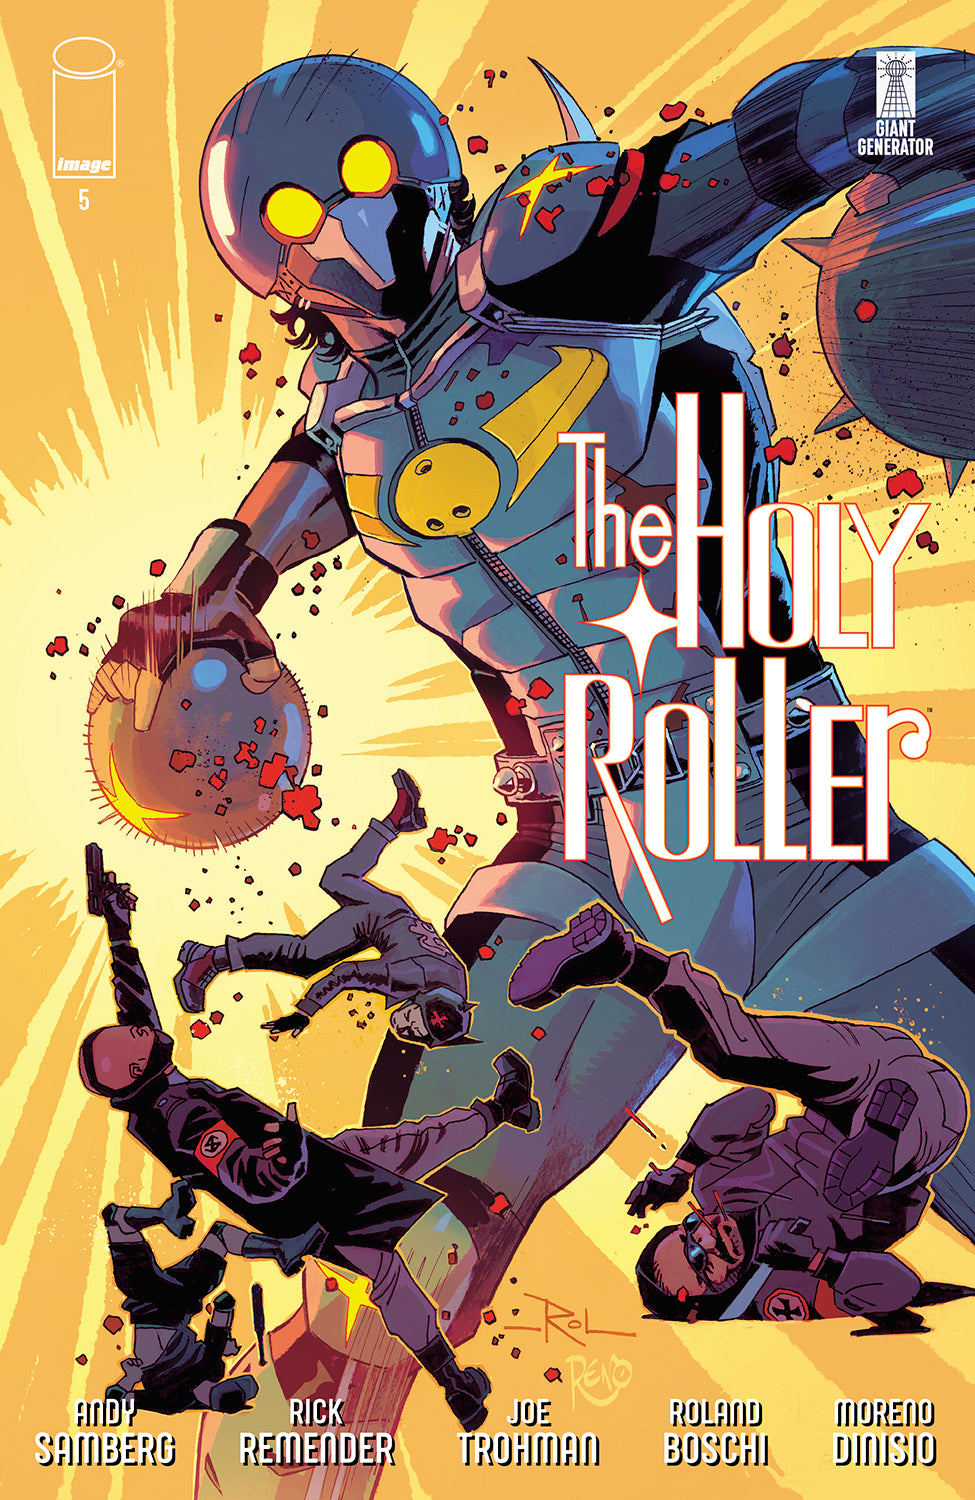 HOLY ROLLER #5 COVER A ROLAND BOSCHI & MORENO DINISIO